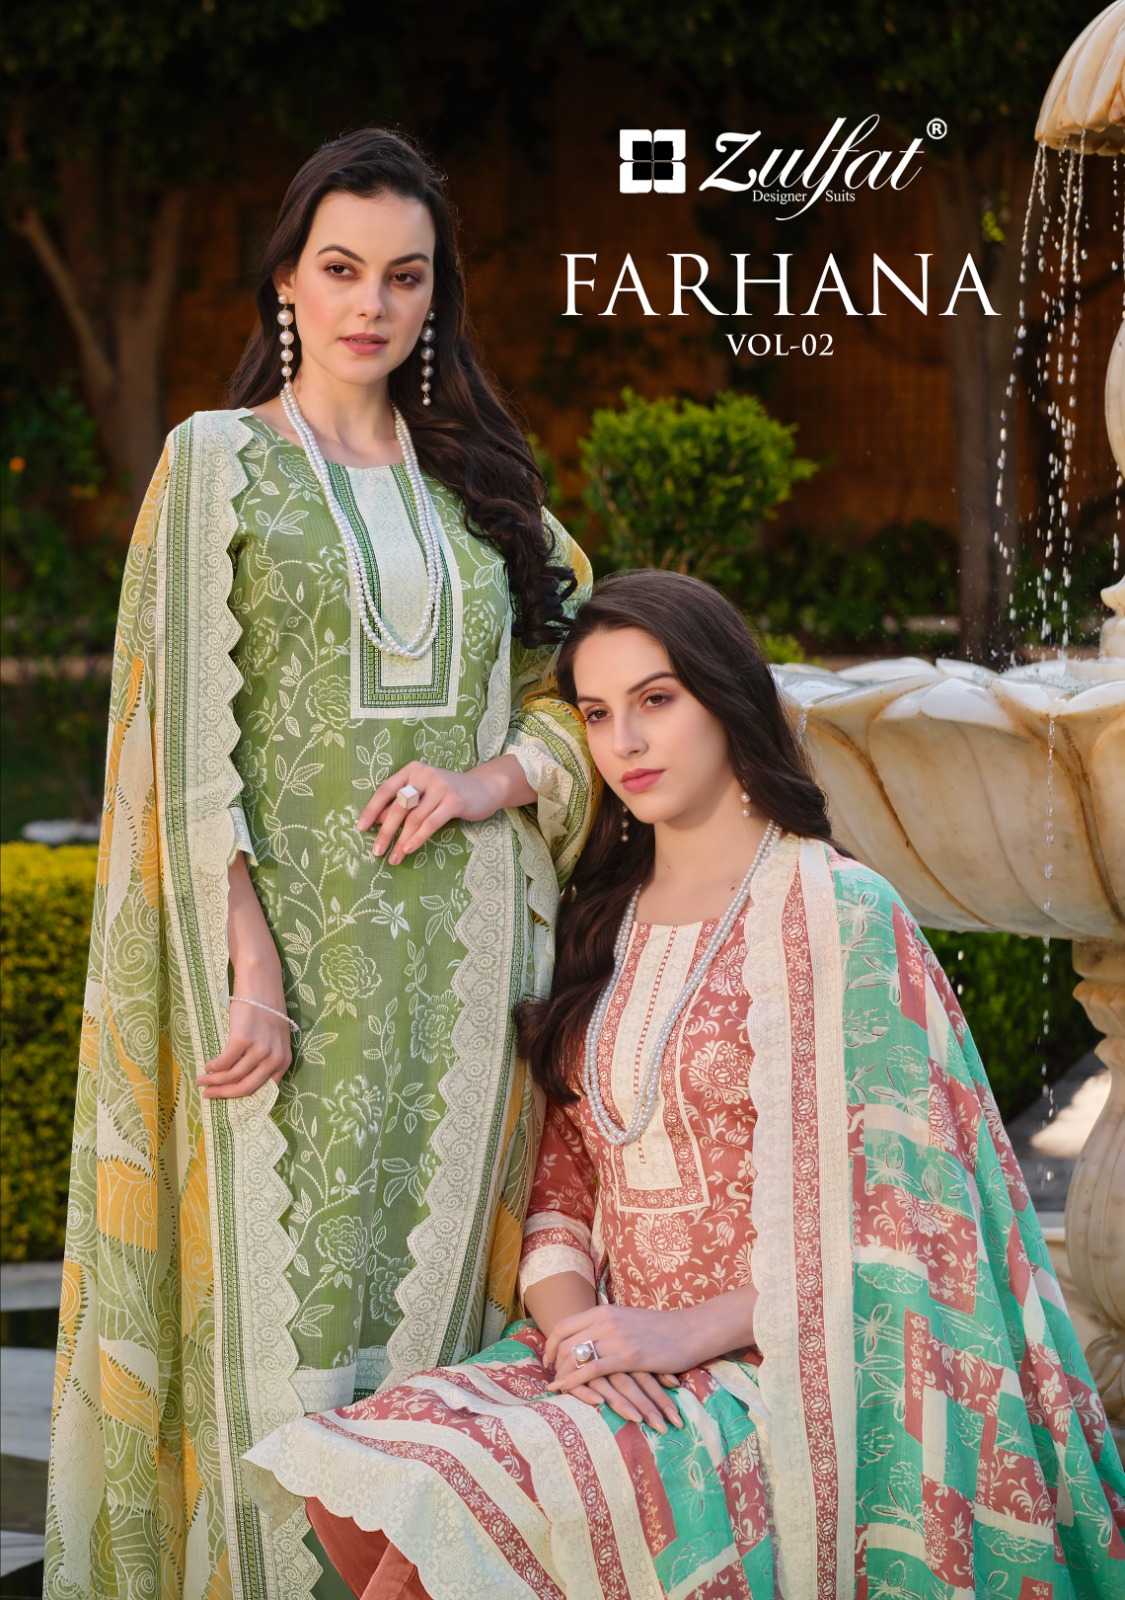 zulfat farhana vol 2 beautiful printed pakistani unstitch suit